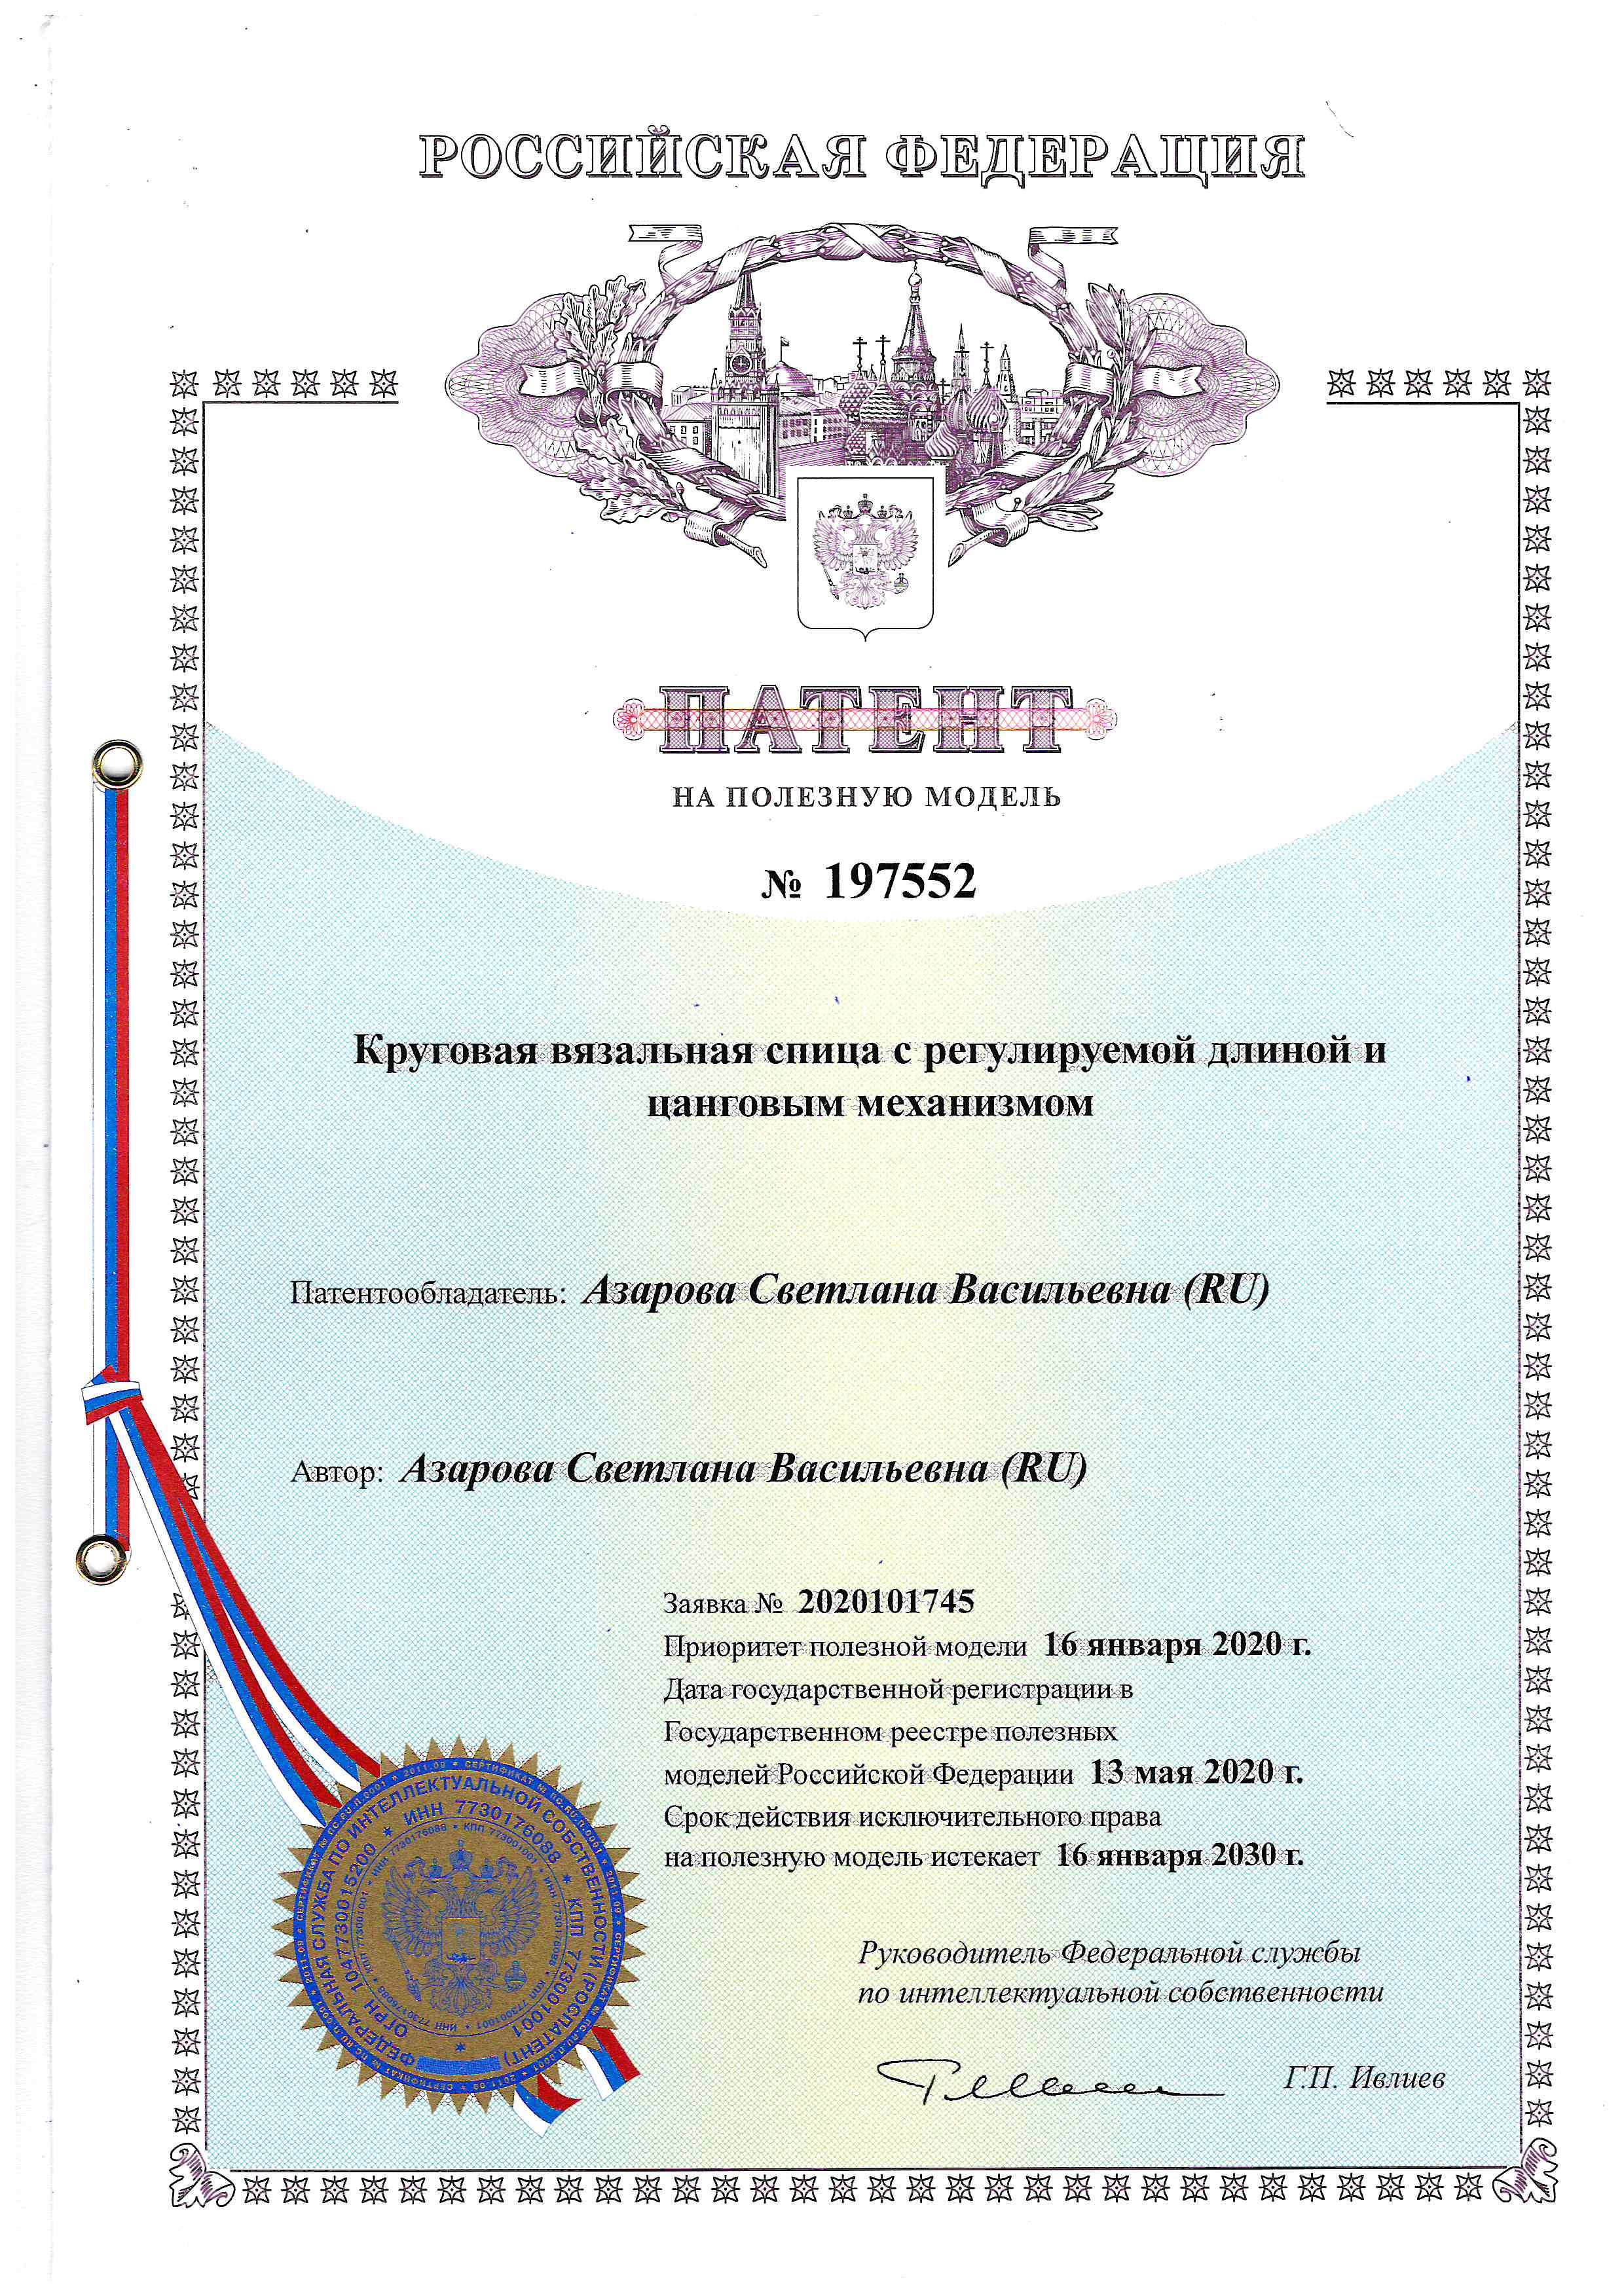 Купить патент на полезную модель Украина Круговая вязальная спица с регулируемой длиной и цанговым механизмом